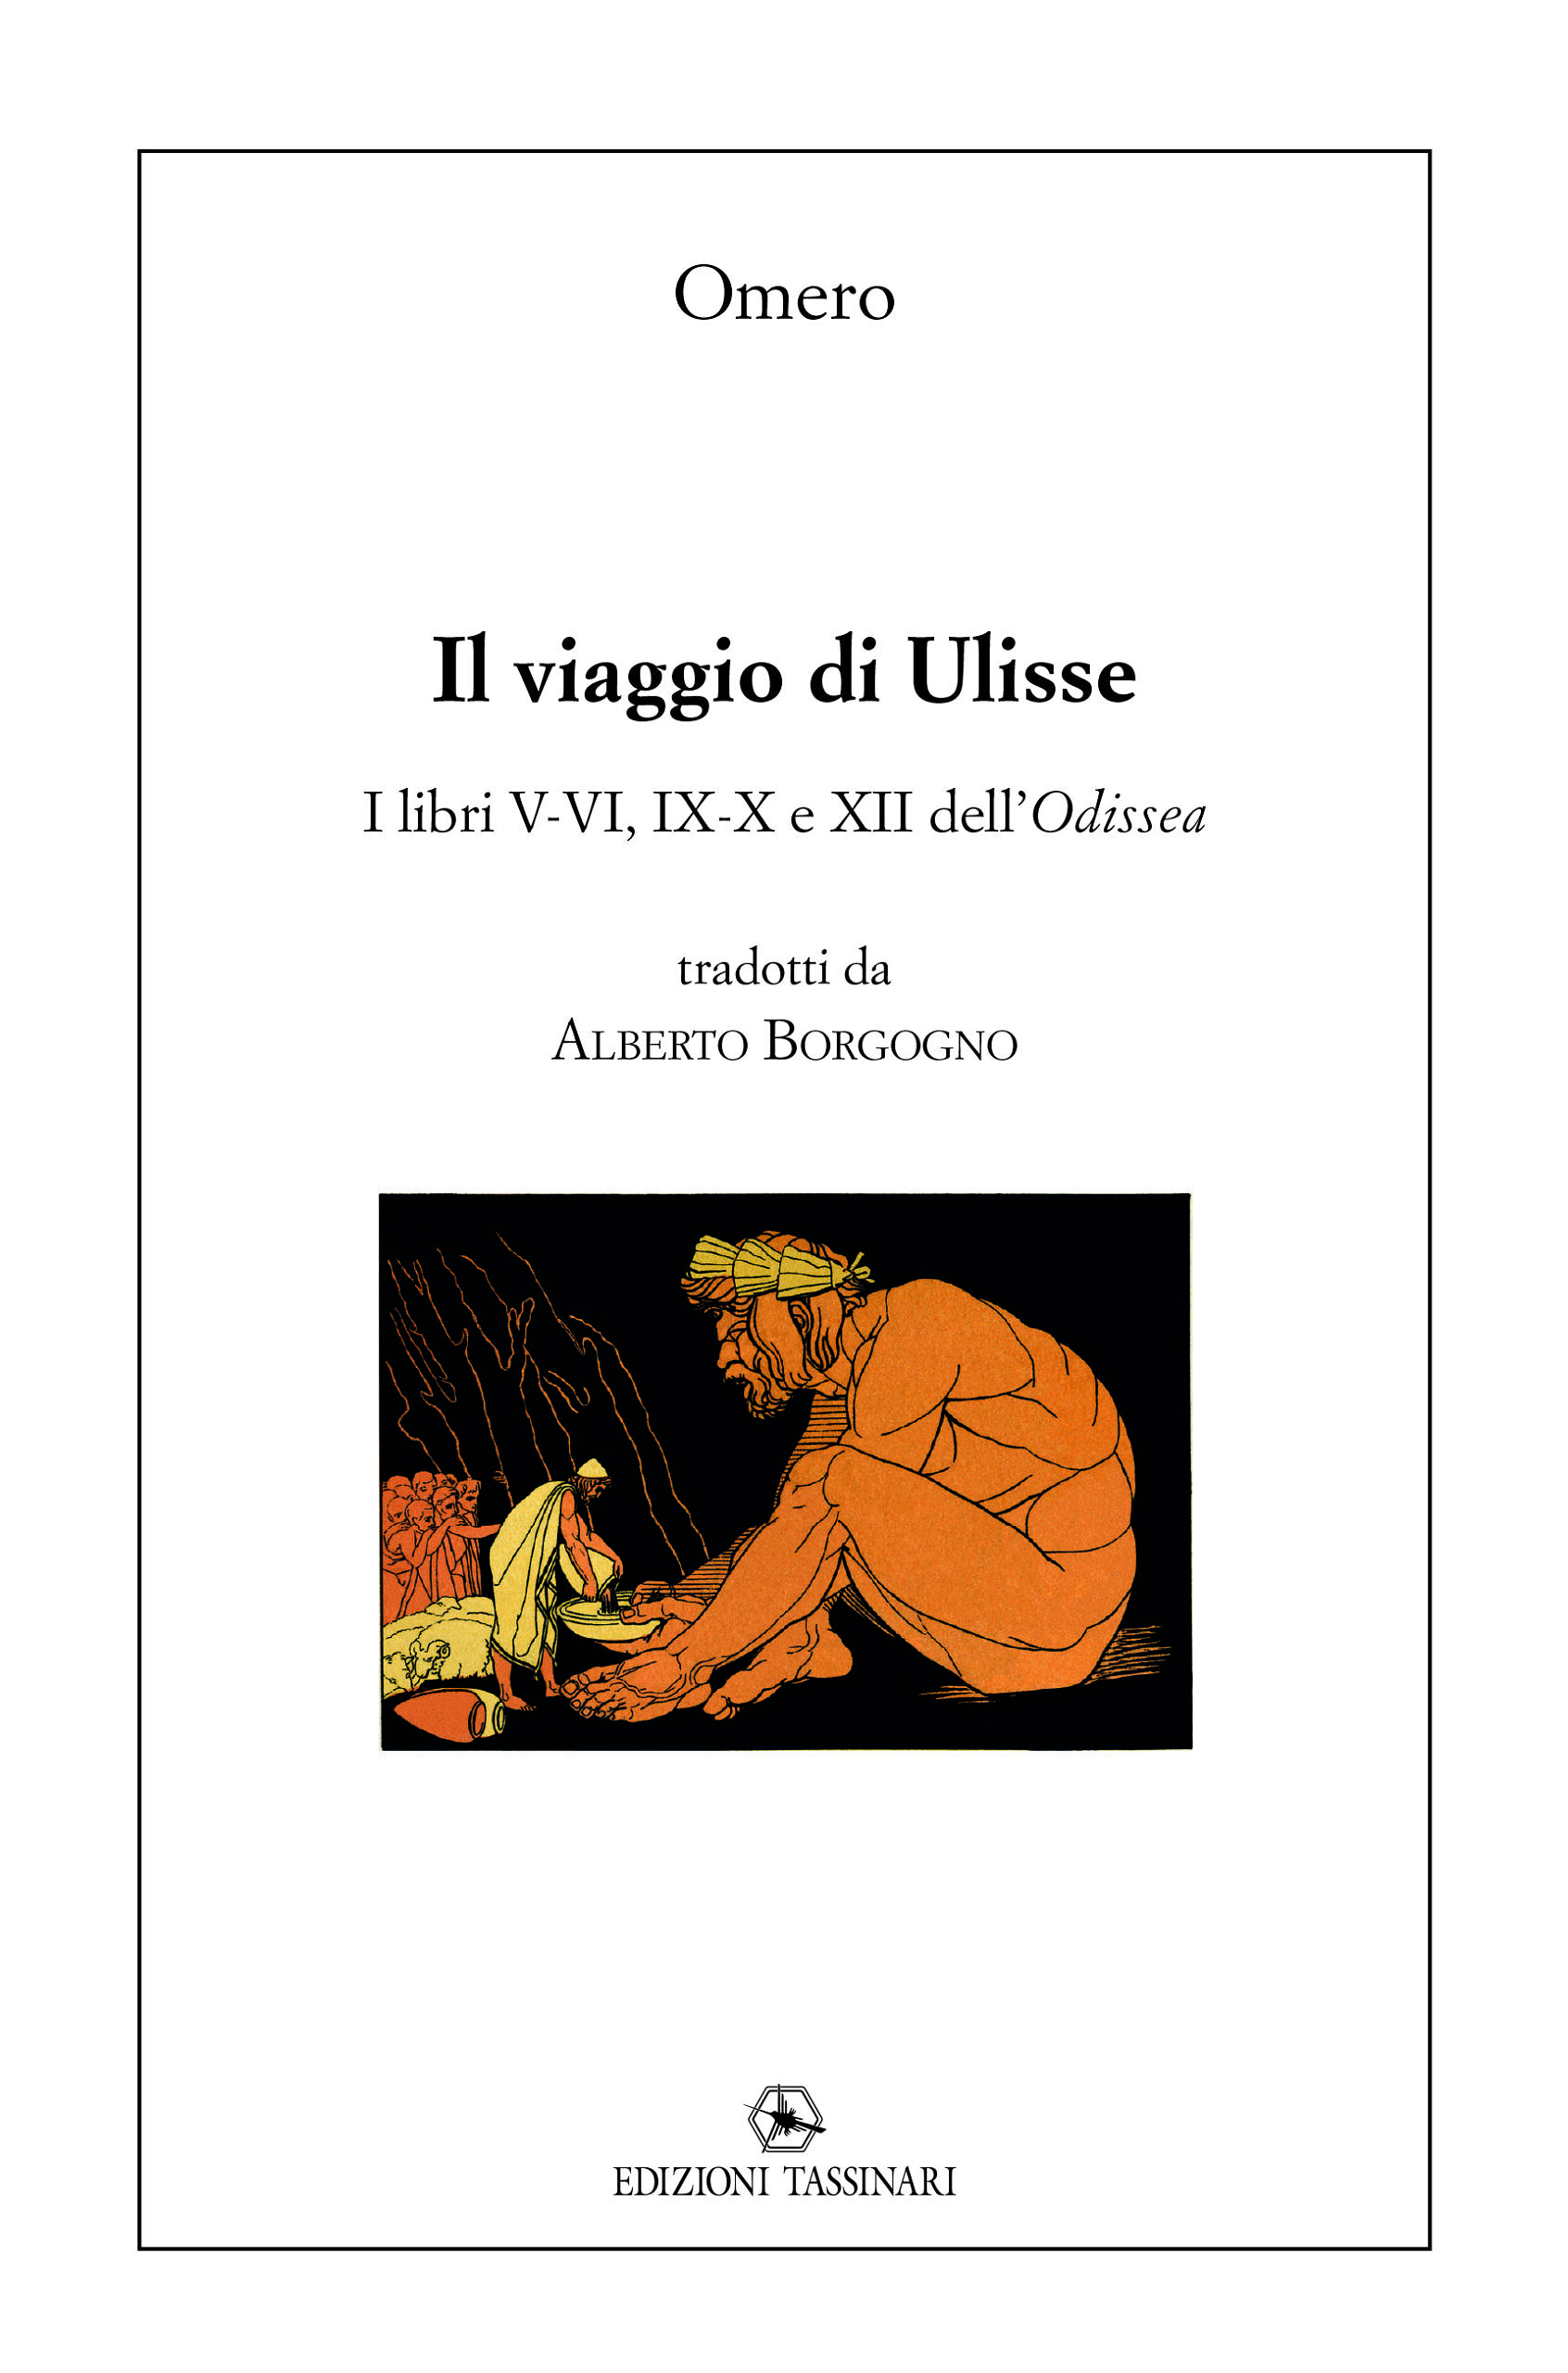 Odissea (Omero, BUR Rizzoli classici) - Libri e Riviste In vendita a Napoli